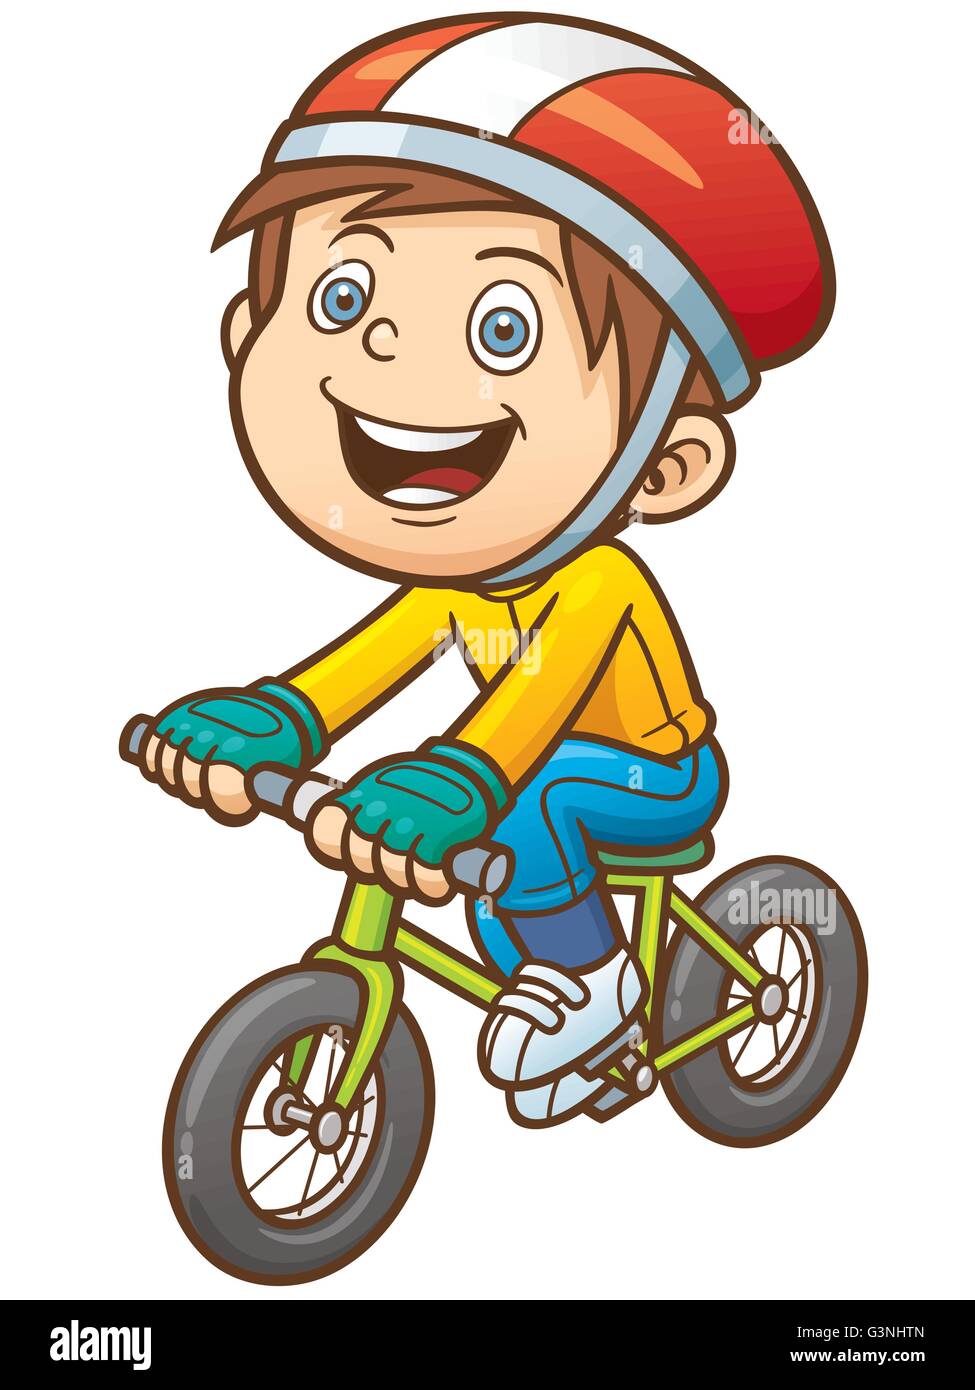 Illustrazione Vettoriale di Cartoon ragazzo su una bicicletta Illustrazione Vettoriale